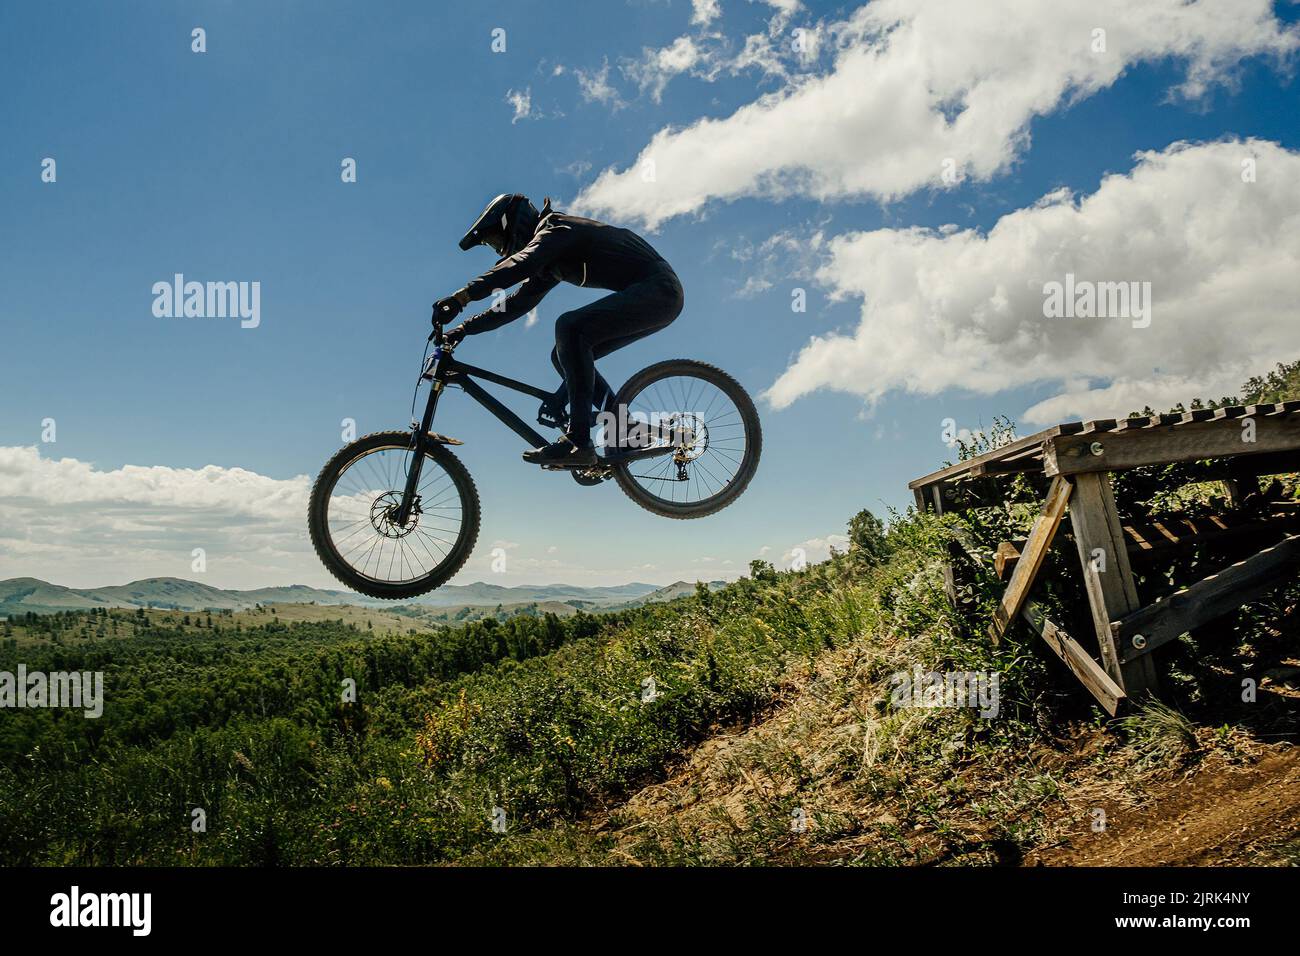 MTB Bicicleta Saltar Sobre Un Camino De Tierra En Una Pista De Tierra  Fotografía De Stock Alamy | sptc.edu.bd